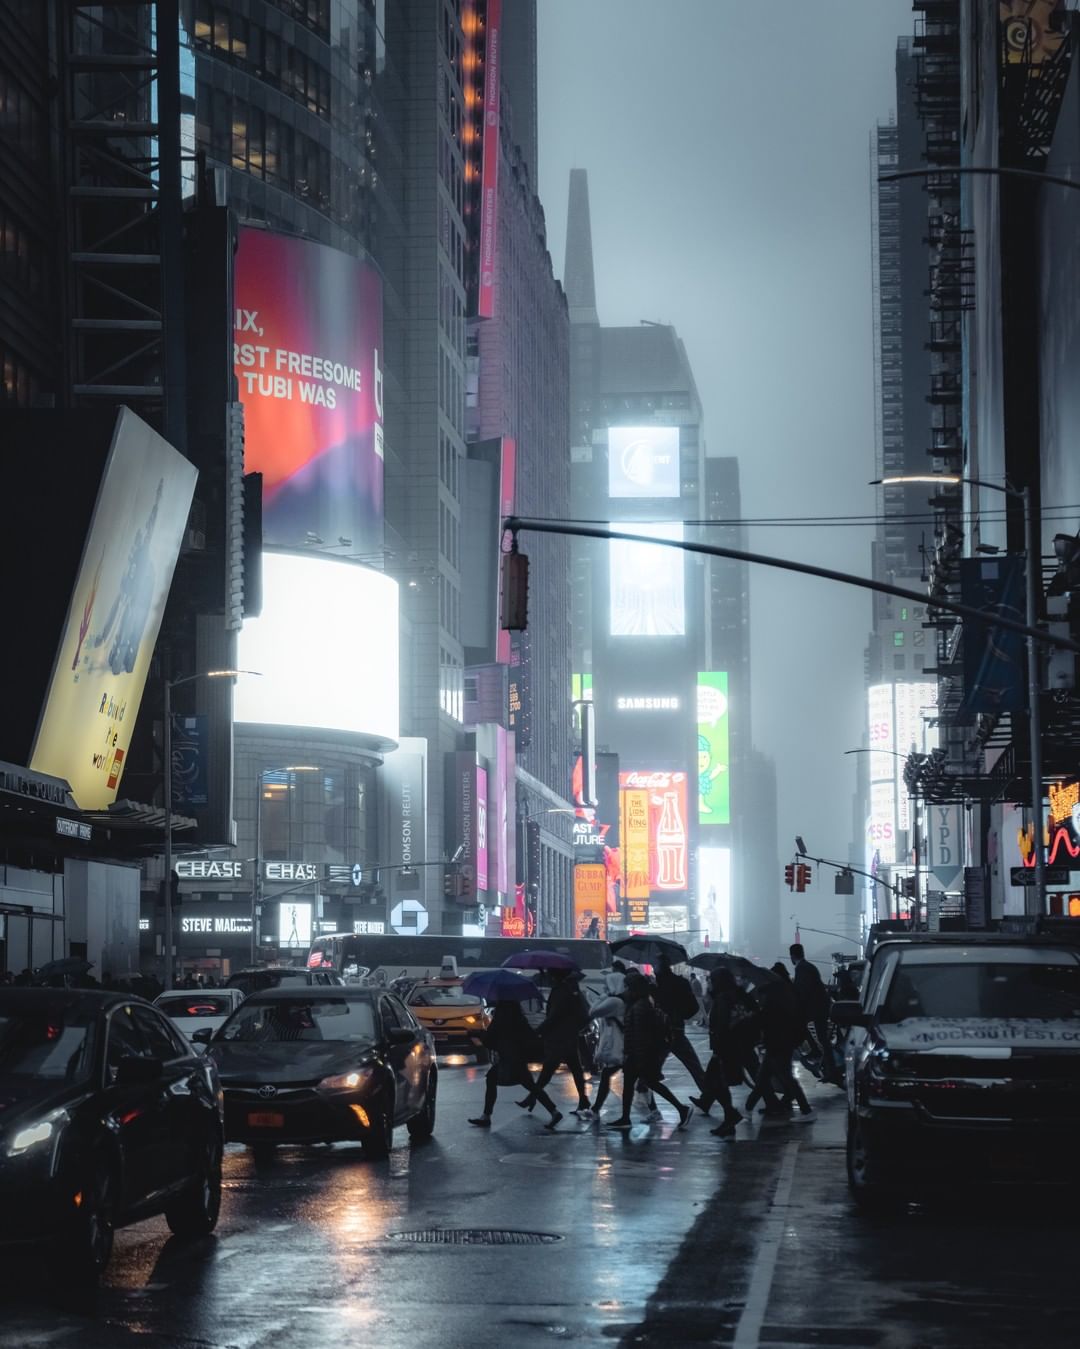 Атмосферная урбанистика на снимках Николаса Миллера города,ночь,тревел-фото